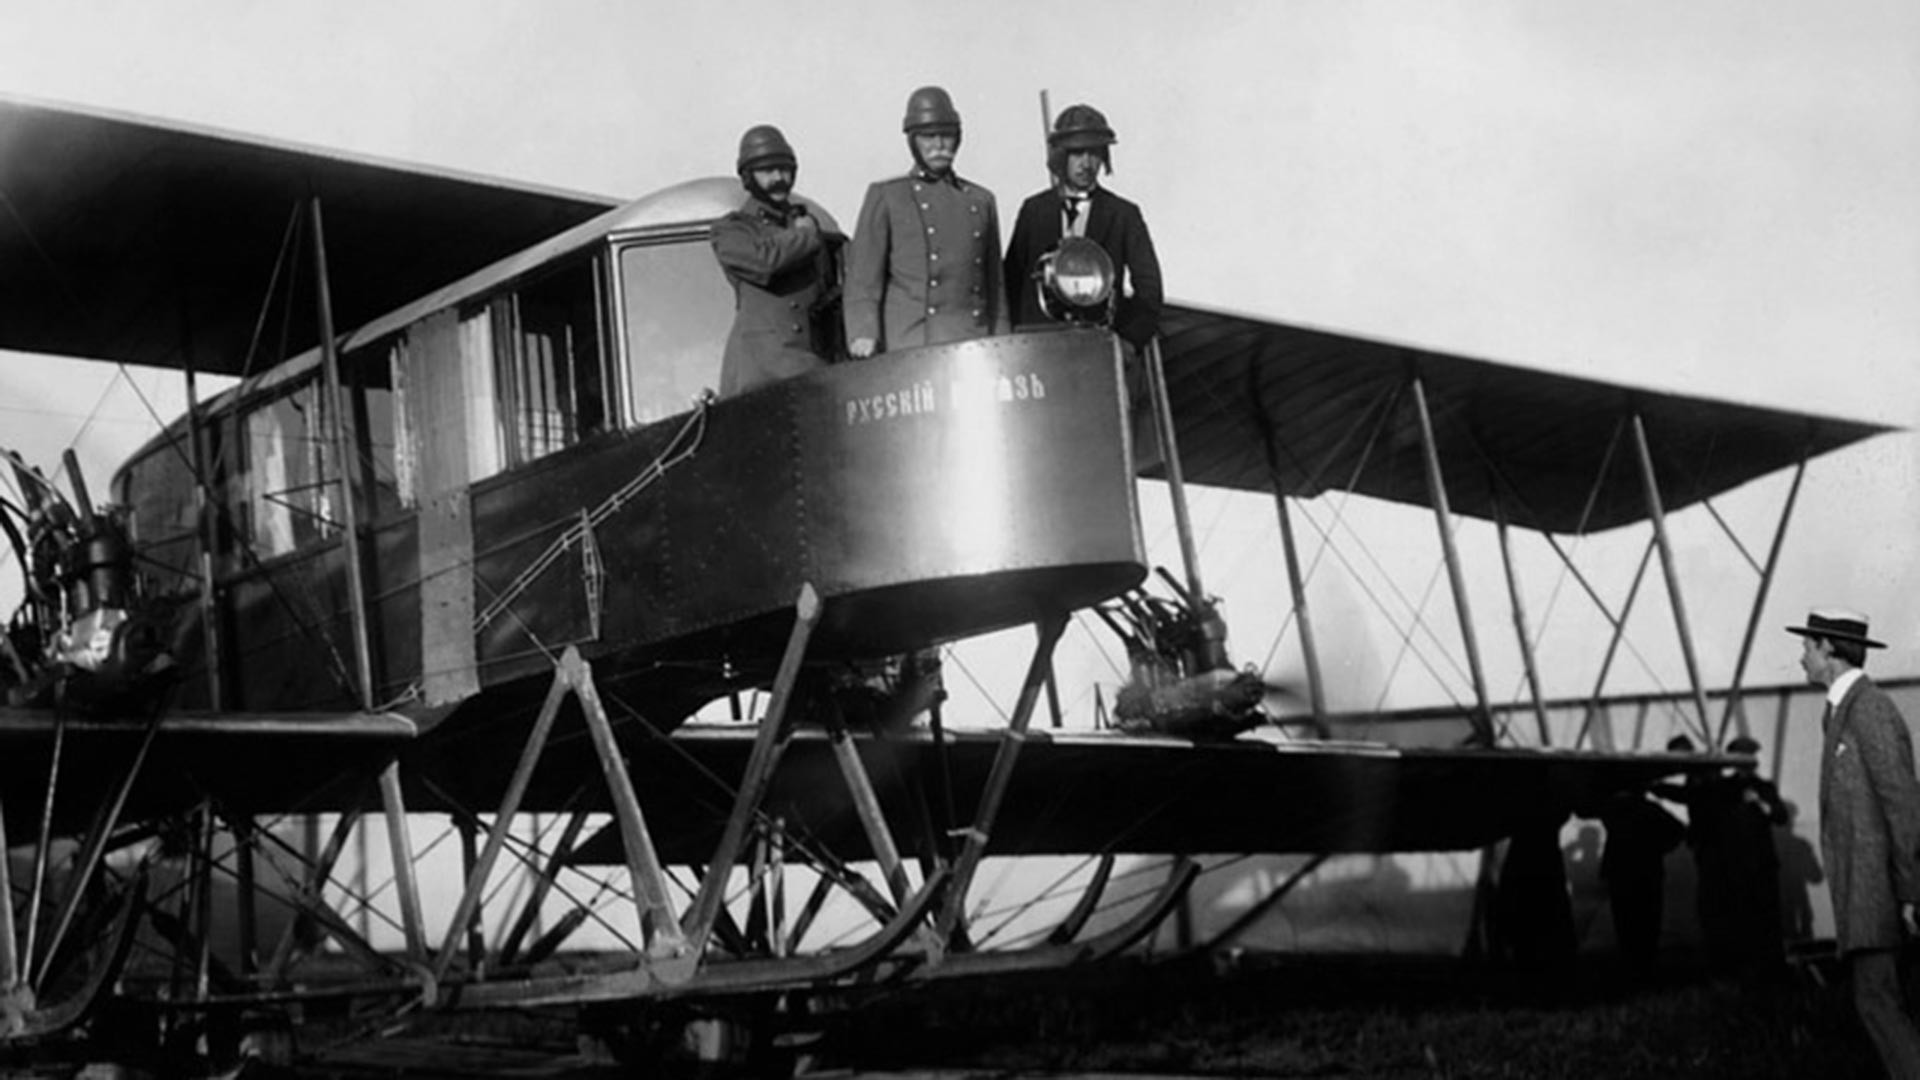 Pelopor penerbangan Igor Sikorsky (kanan)